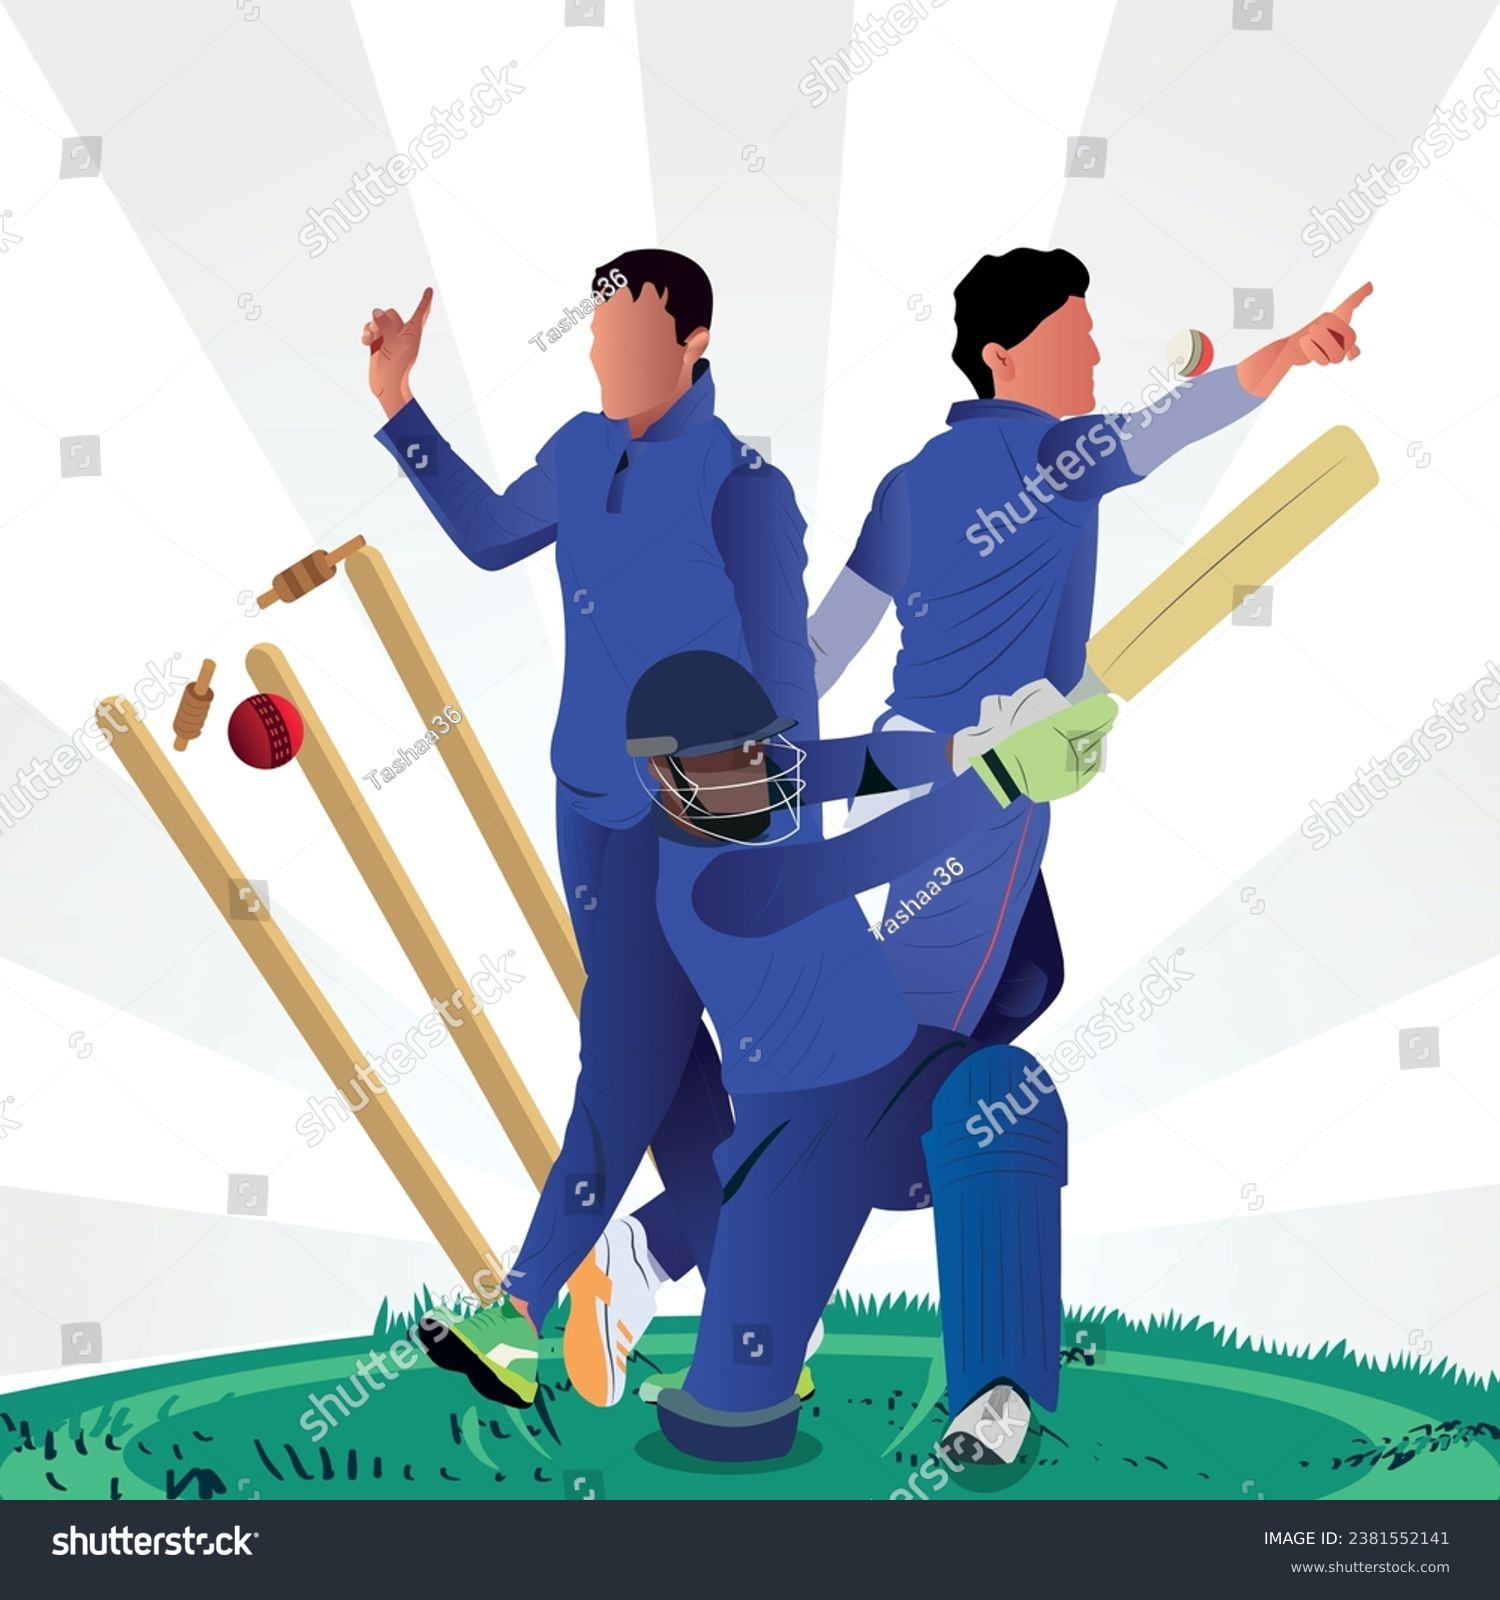 SVG of Colorful illustration of batsmen player, baller playing cricket svg